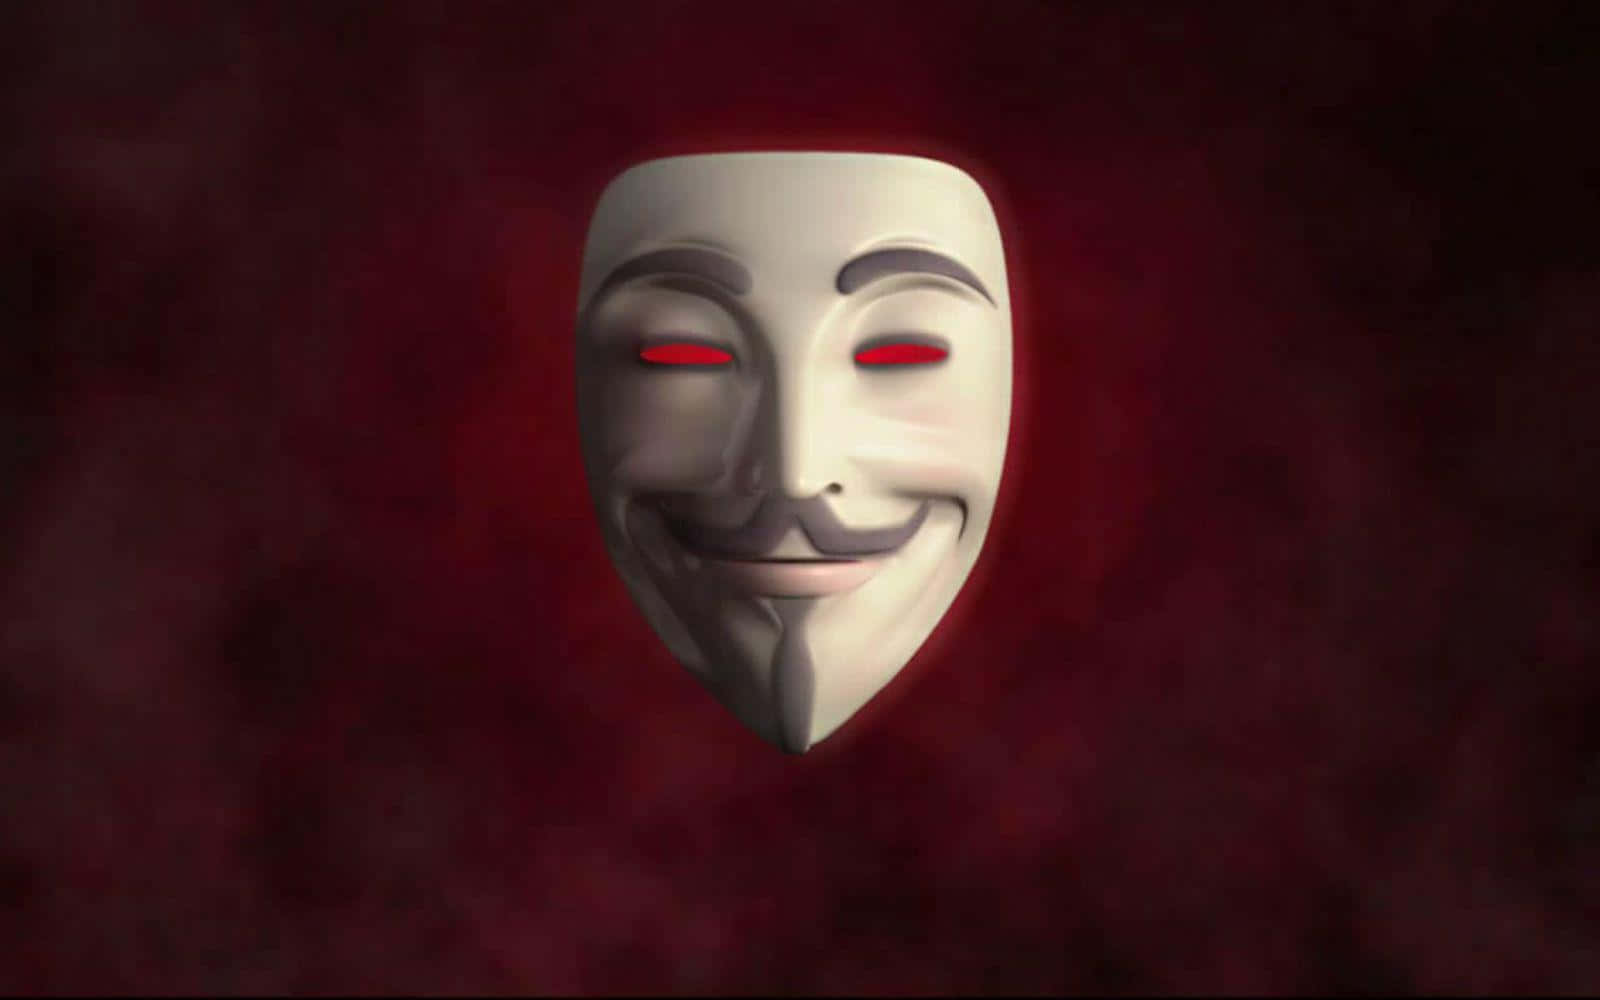 Eineweiße Maske Mit Roten Augen Auf Einem Roten Hintergrund